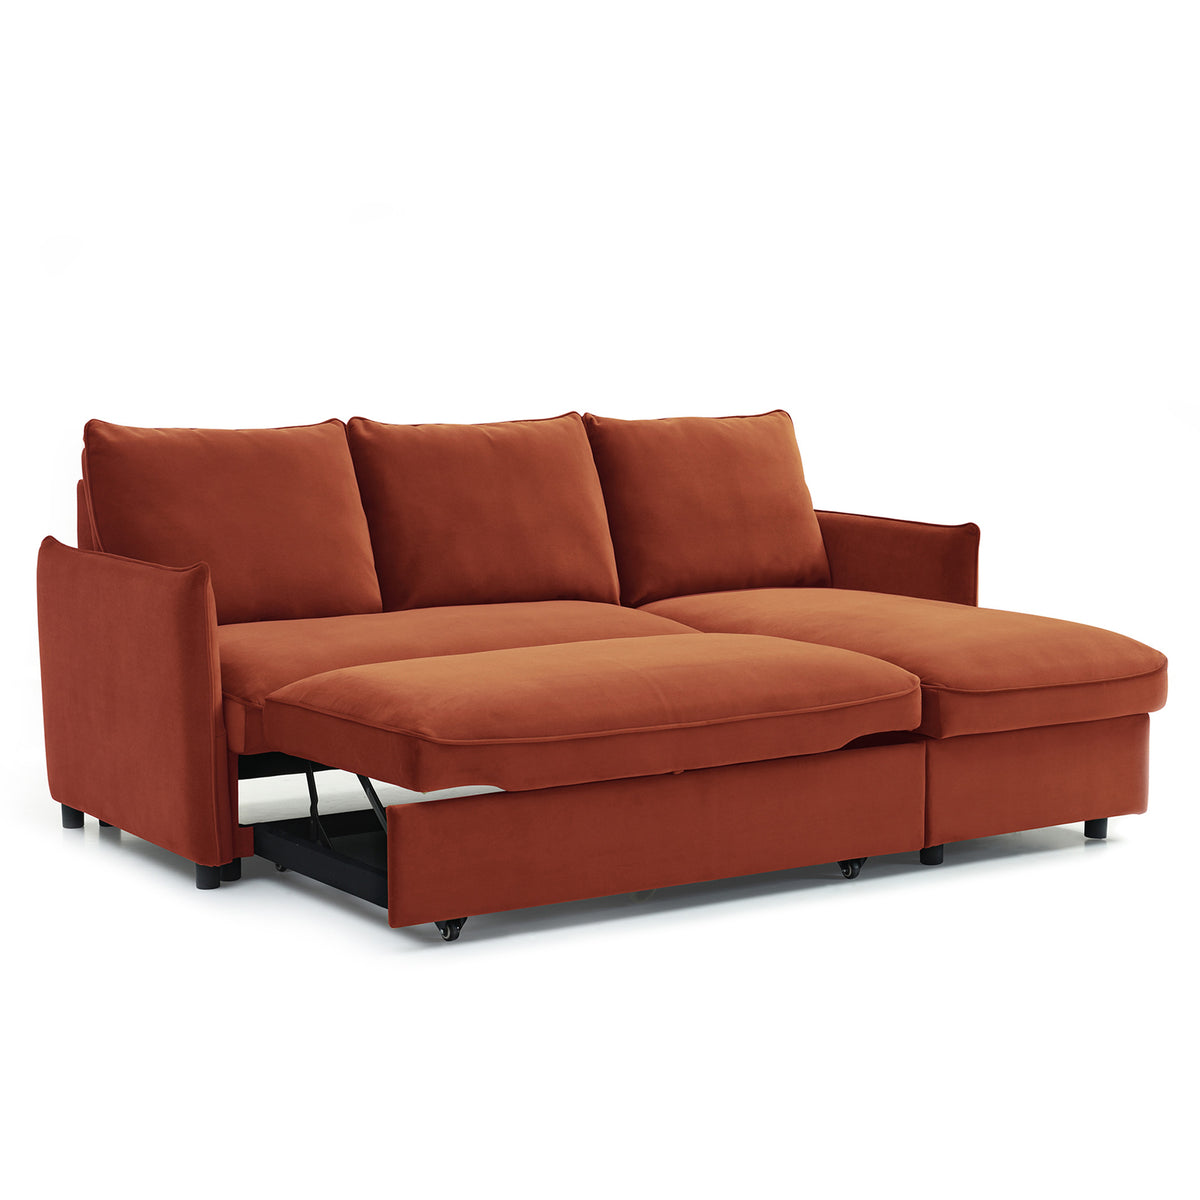 Thalia Burnt Orange Velvet 3 Seater Corner Chaise Sofa Bed from Roseland Furniture